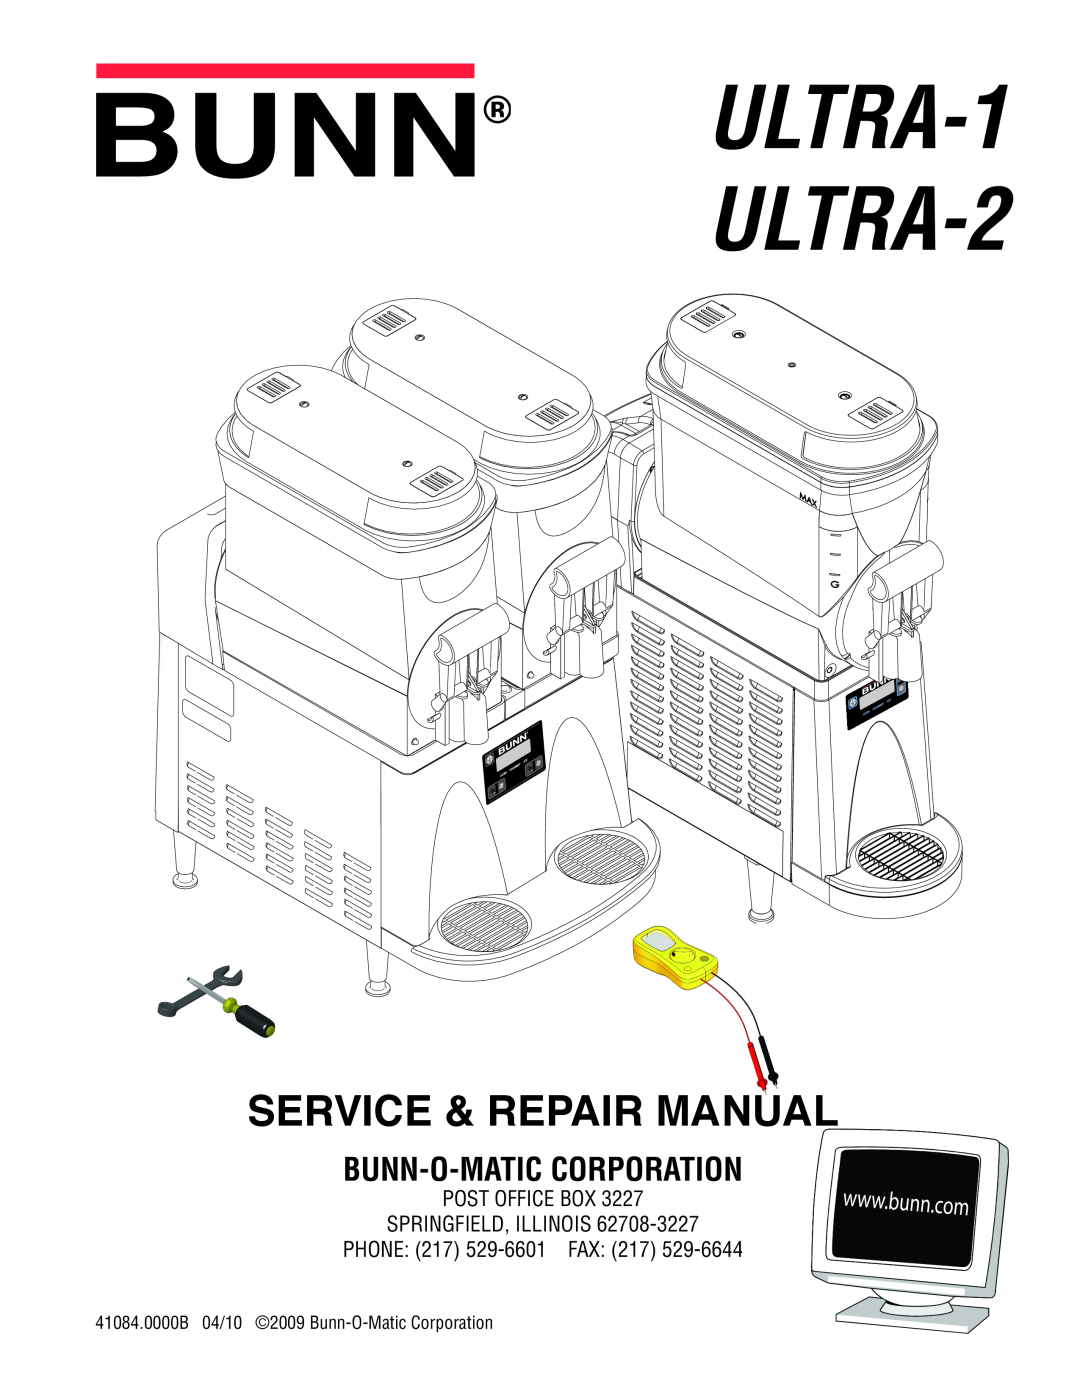 Bunn manual ULTRA-1 ULTRA-2, Service & Repair Manual, Bunn-O-Maticcorporation 